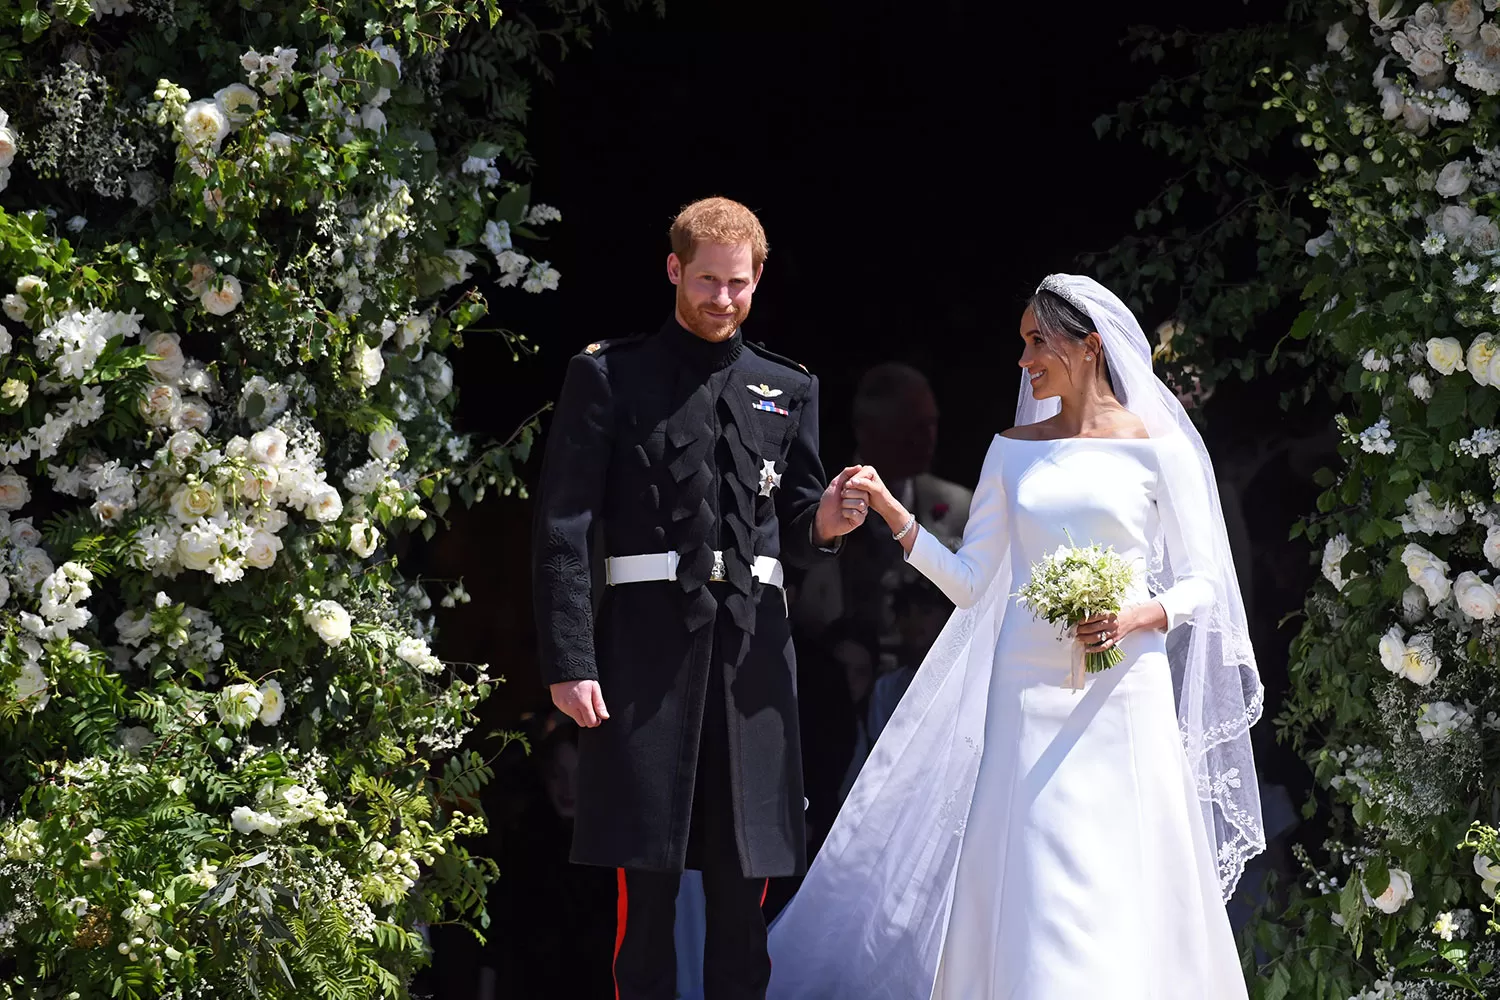 La boda real fue seguida por millones de personas en todo el mundo. REUTERS